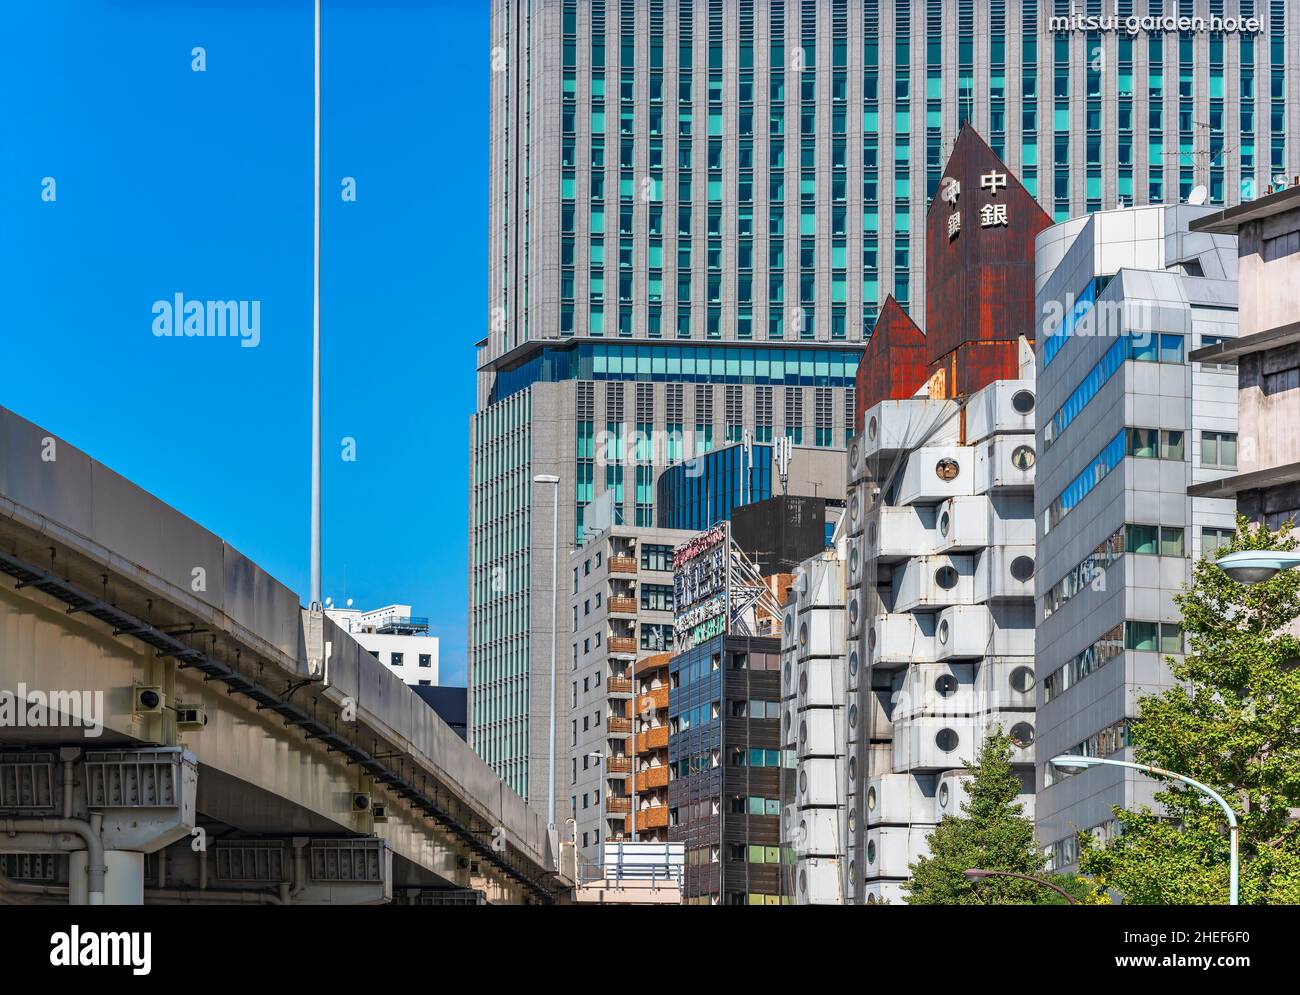 tokio, japan - oktober 28 2021: Das ikonische Gebäude des Nakagin Capsule Tower wird von einem verrosteten Dach gekrönt, das 1972 vom japanischen Architekten Kisho Kurokawa entworfen wurde Stockfoto